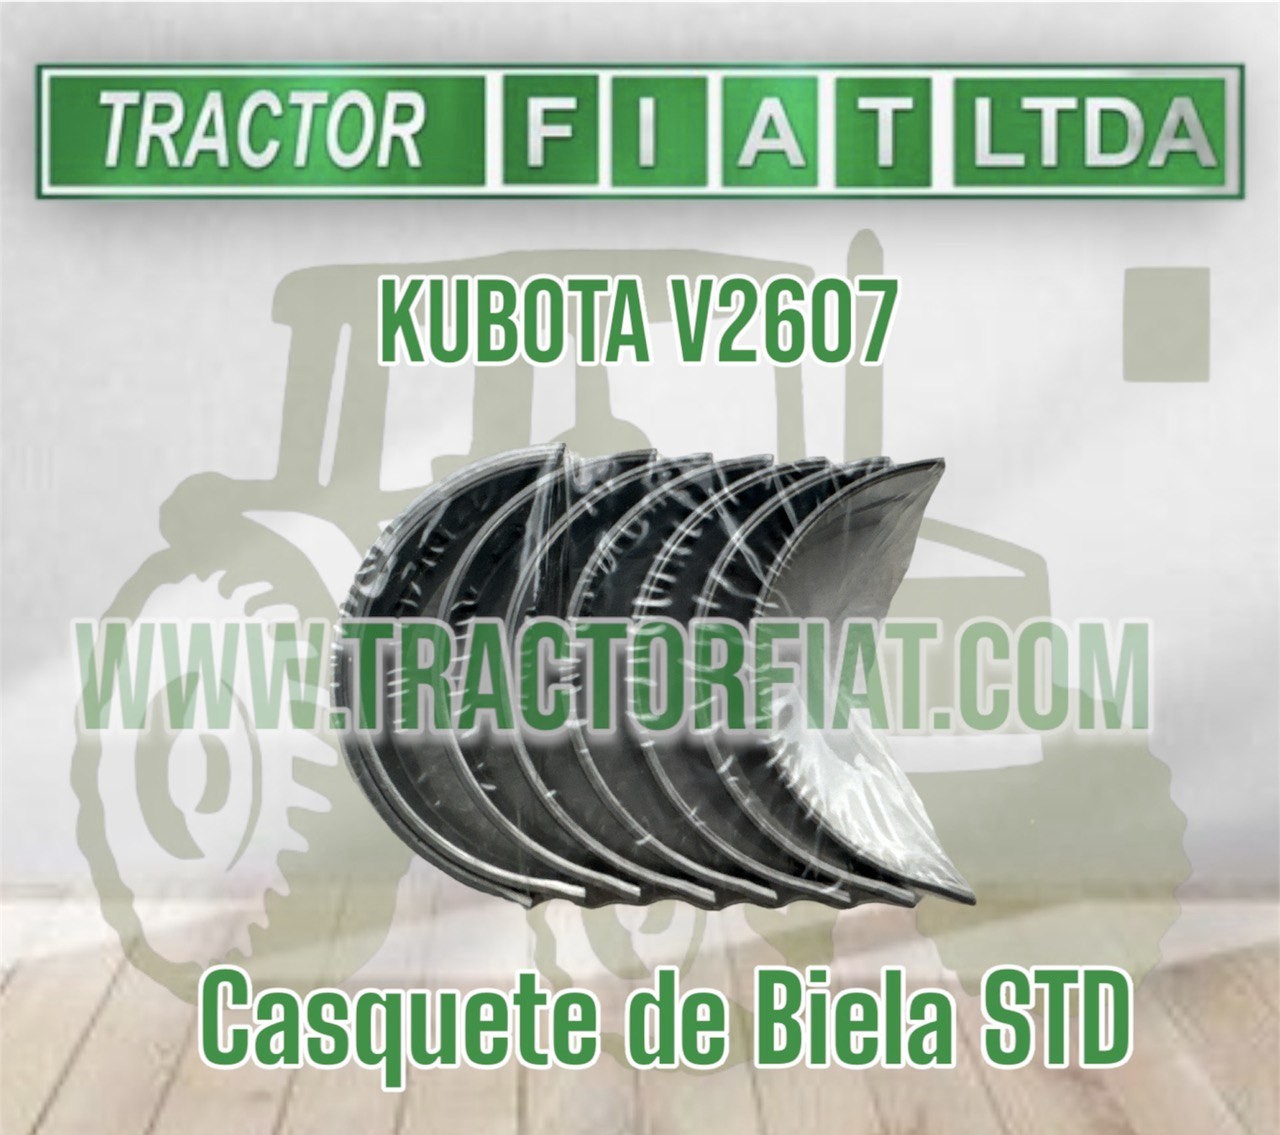 CASQUETES DE BIELA STD - MOTOR KUBOTA V2607